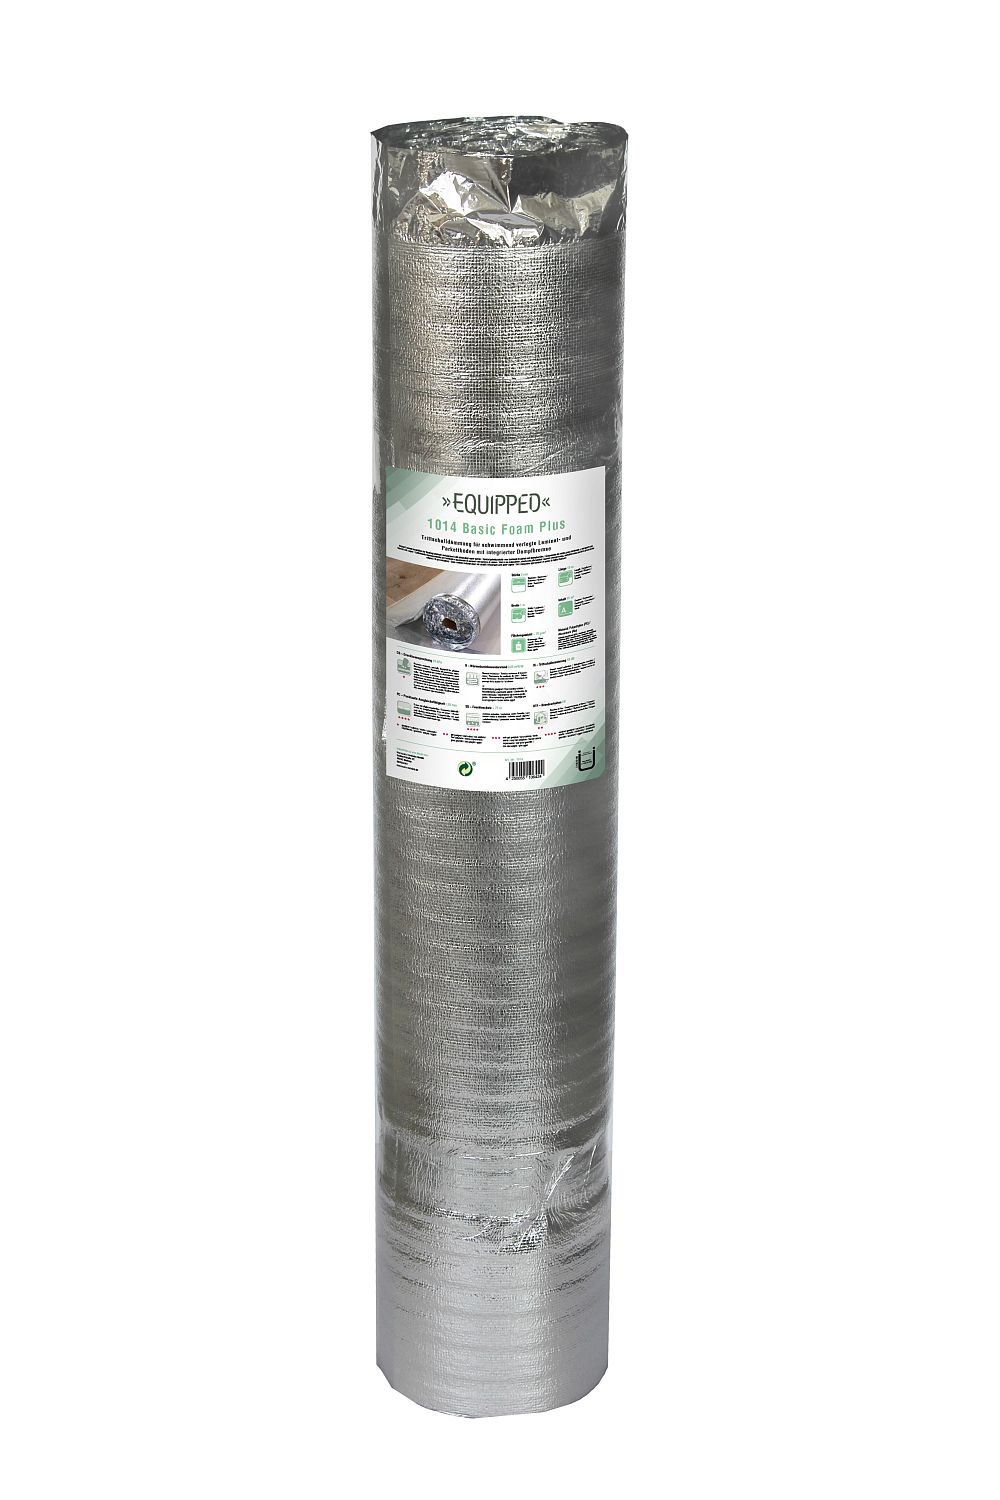 EQUIPPED 1014 Basic Foam Plus (2mm) - 15m²/Rolle - 24 rollen/ Karton - Breite 1m - Unterlage / Trittschalldämmung für Laminat